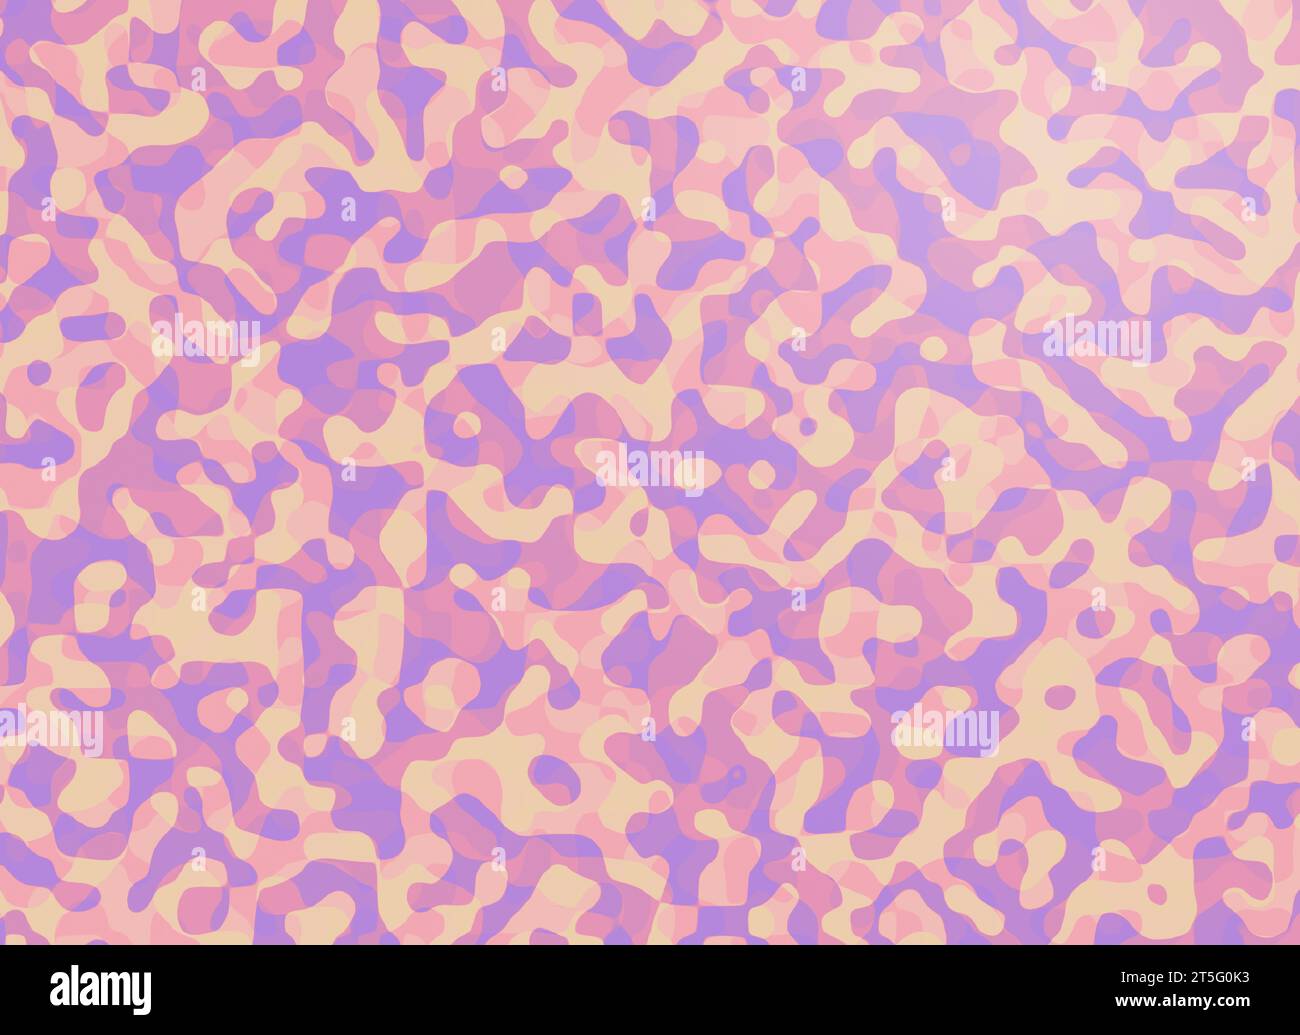 Formes et motifs superposés abstraits et chaotiques violets, roses et oranges. Fond coloré plein cadre abstrait haute résolution avec espace de copie. Banque D'Images